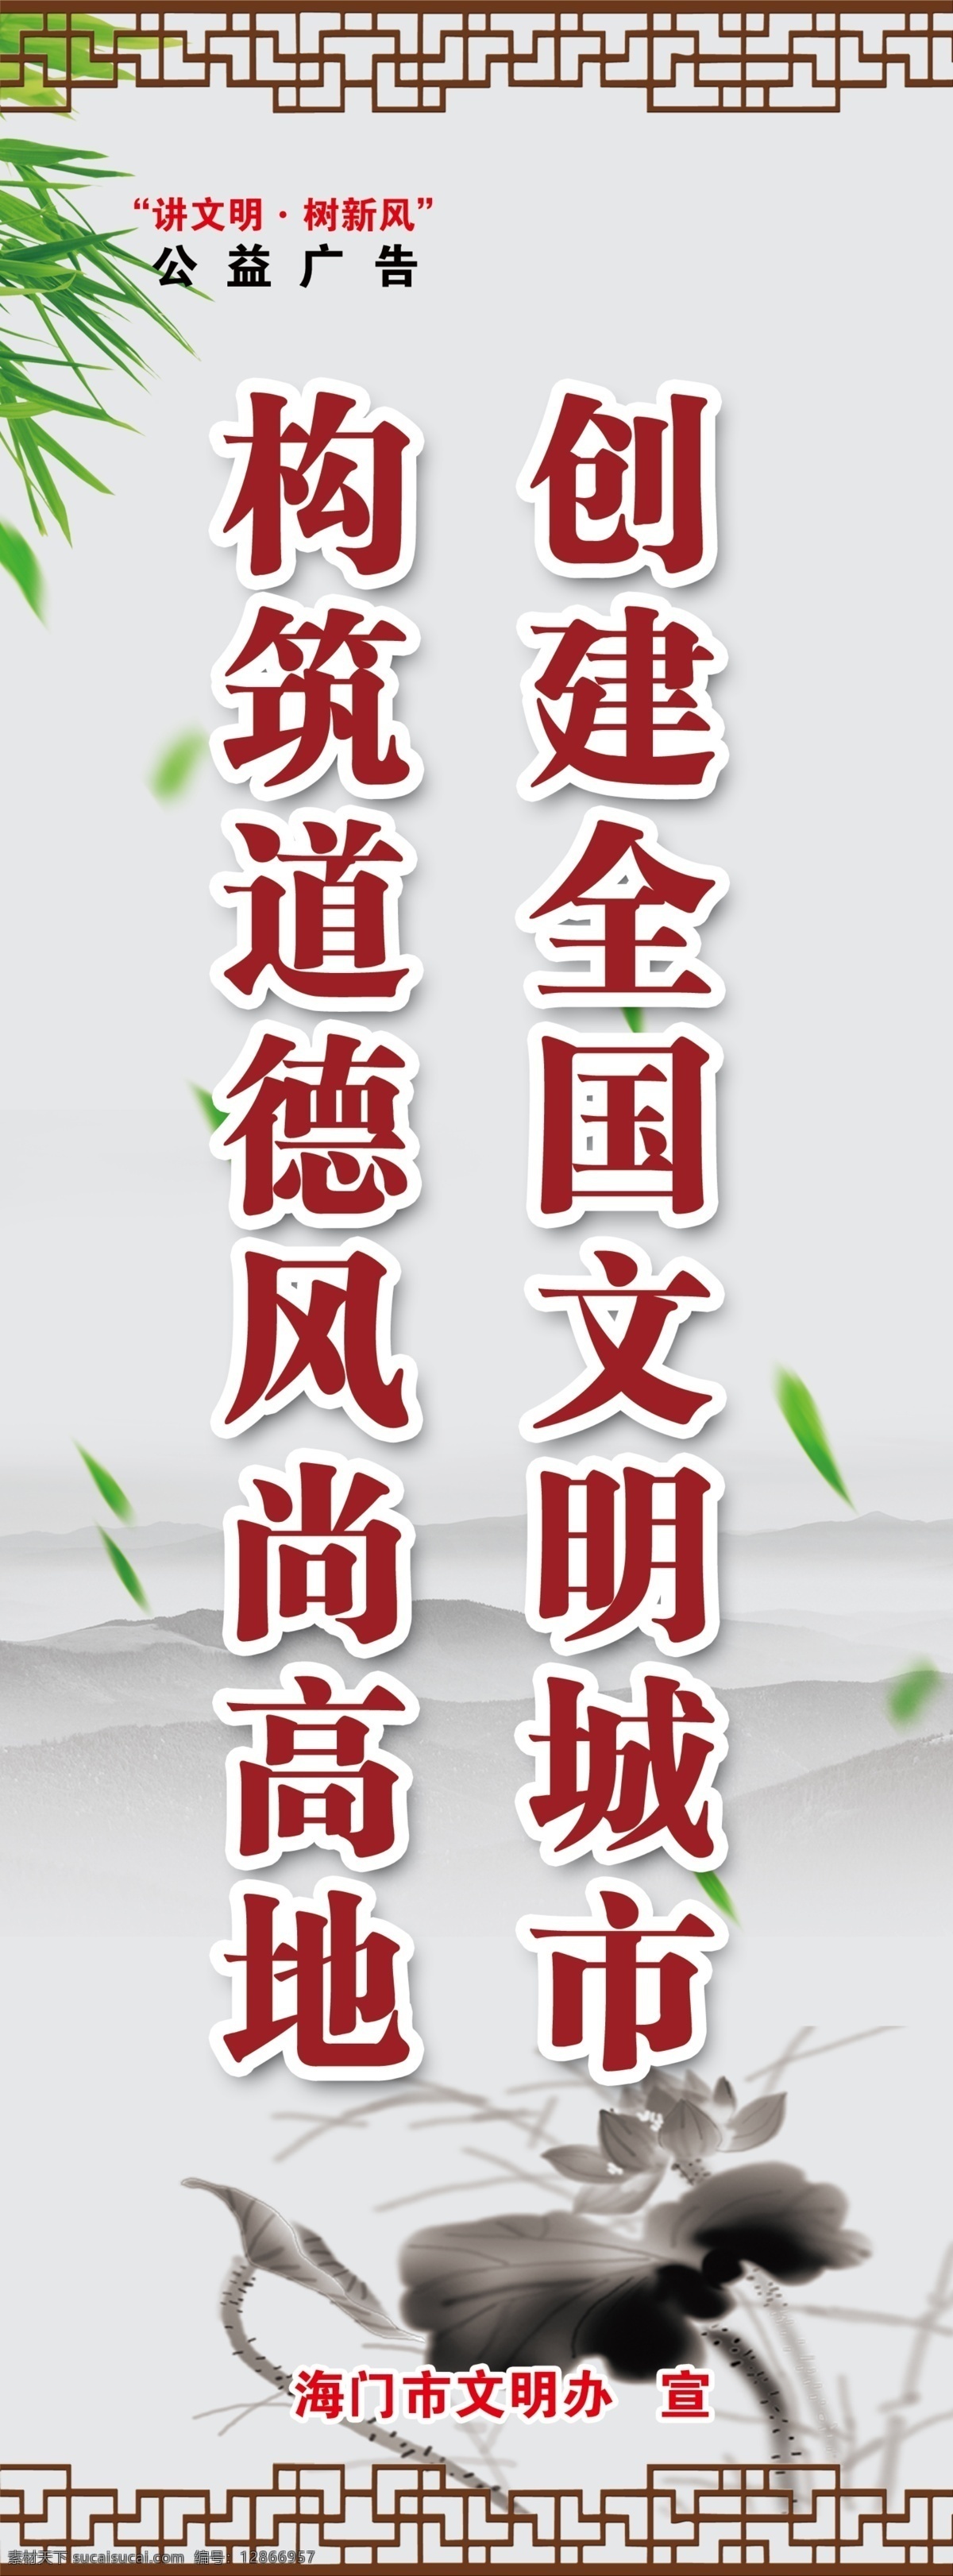 文明城市 灯杆旗 道德风尚 政府宣传 城市印象 灯杆广告 中国风 水墨